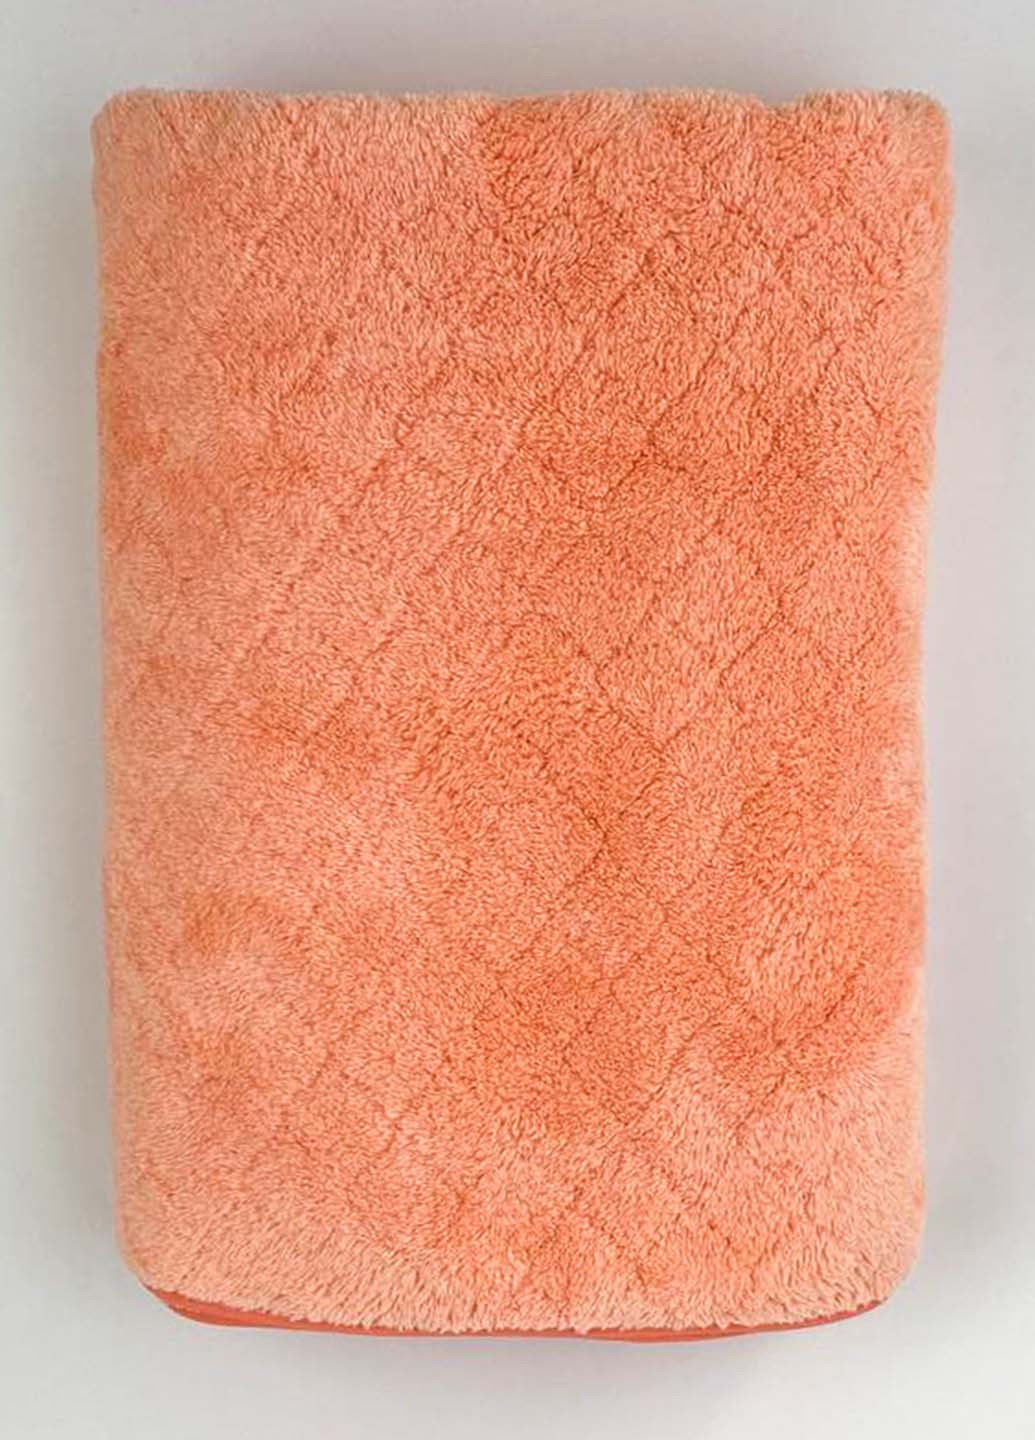 Homedec полотенце банное микрофибра 140х70 см однотонный персиковый производство - Турция